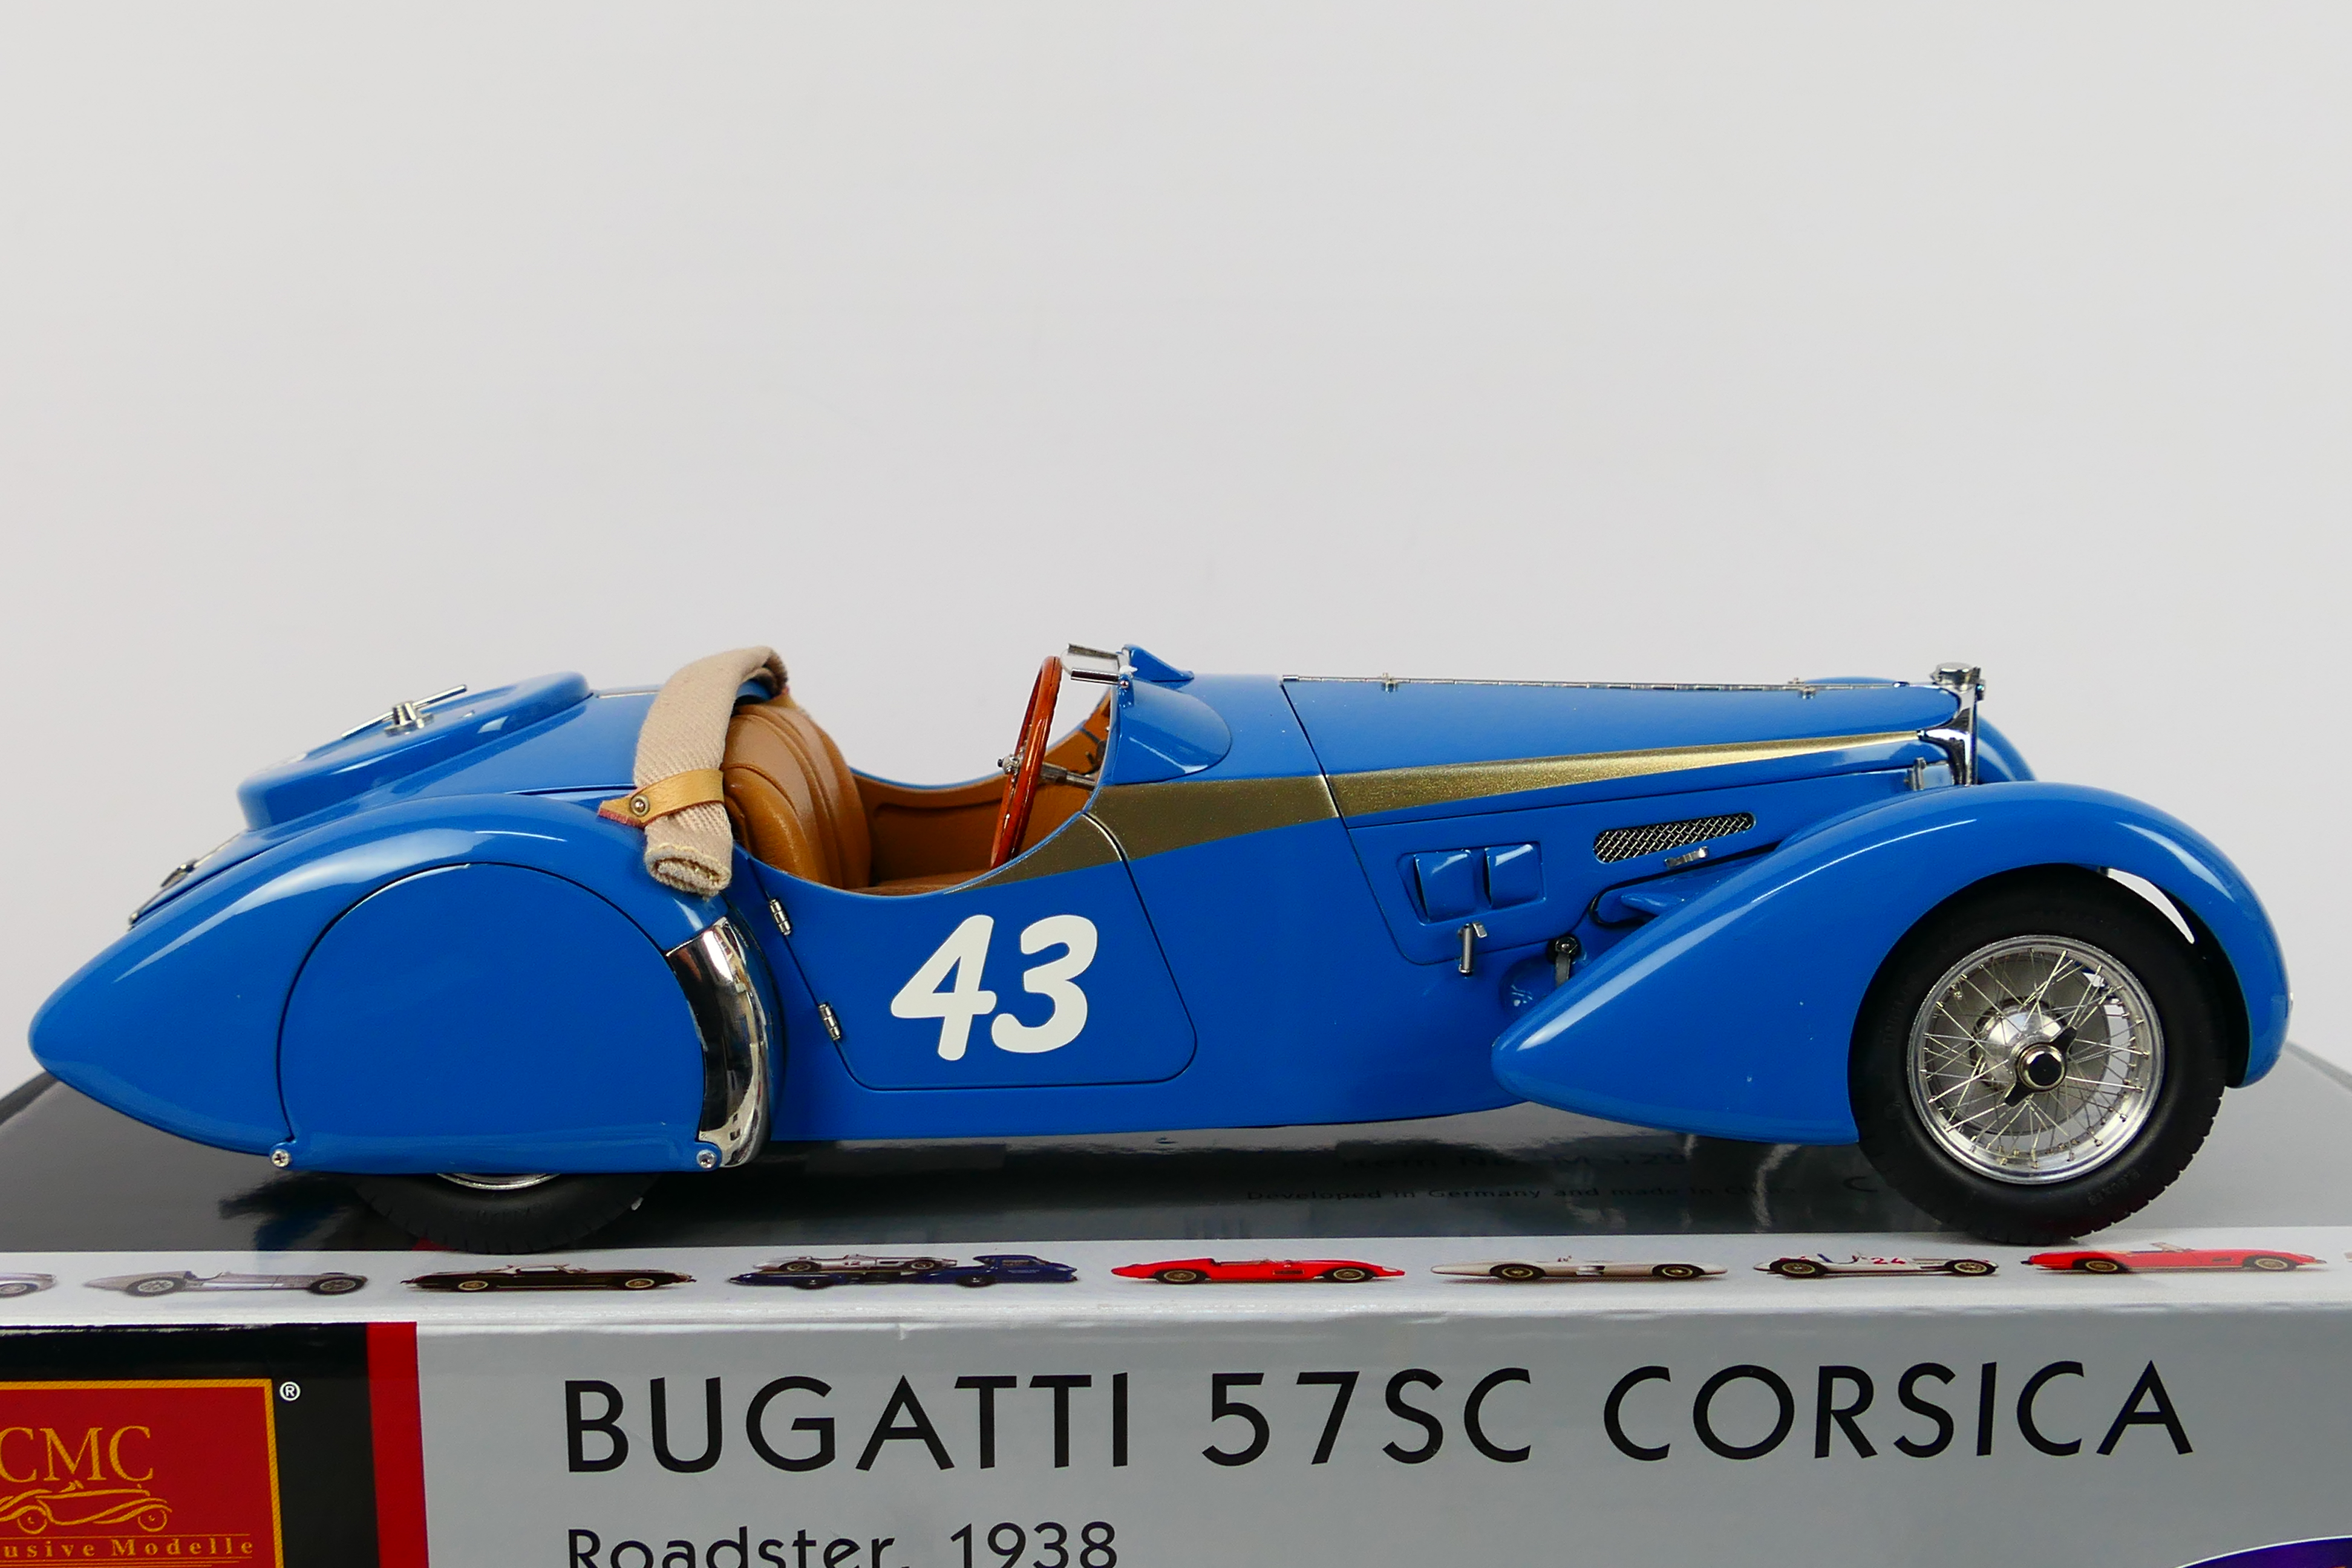 CMC - A limited edition 1938 Bugatti 57 SC Corsica in the rare Roadster Sport finish in 1:18 scale - Image 7 of 9